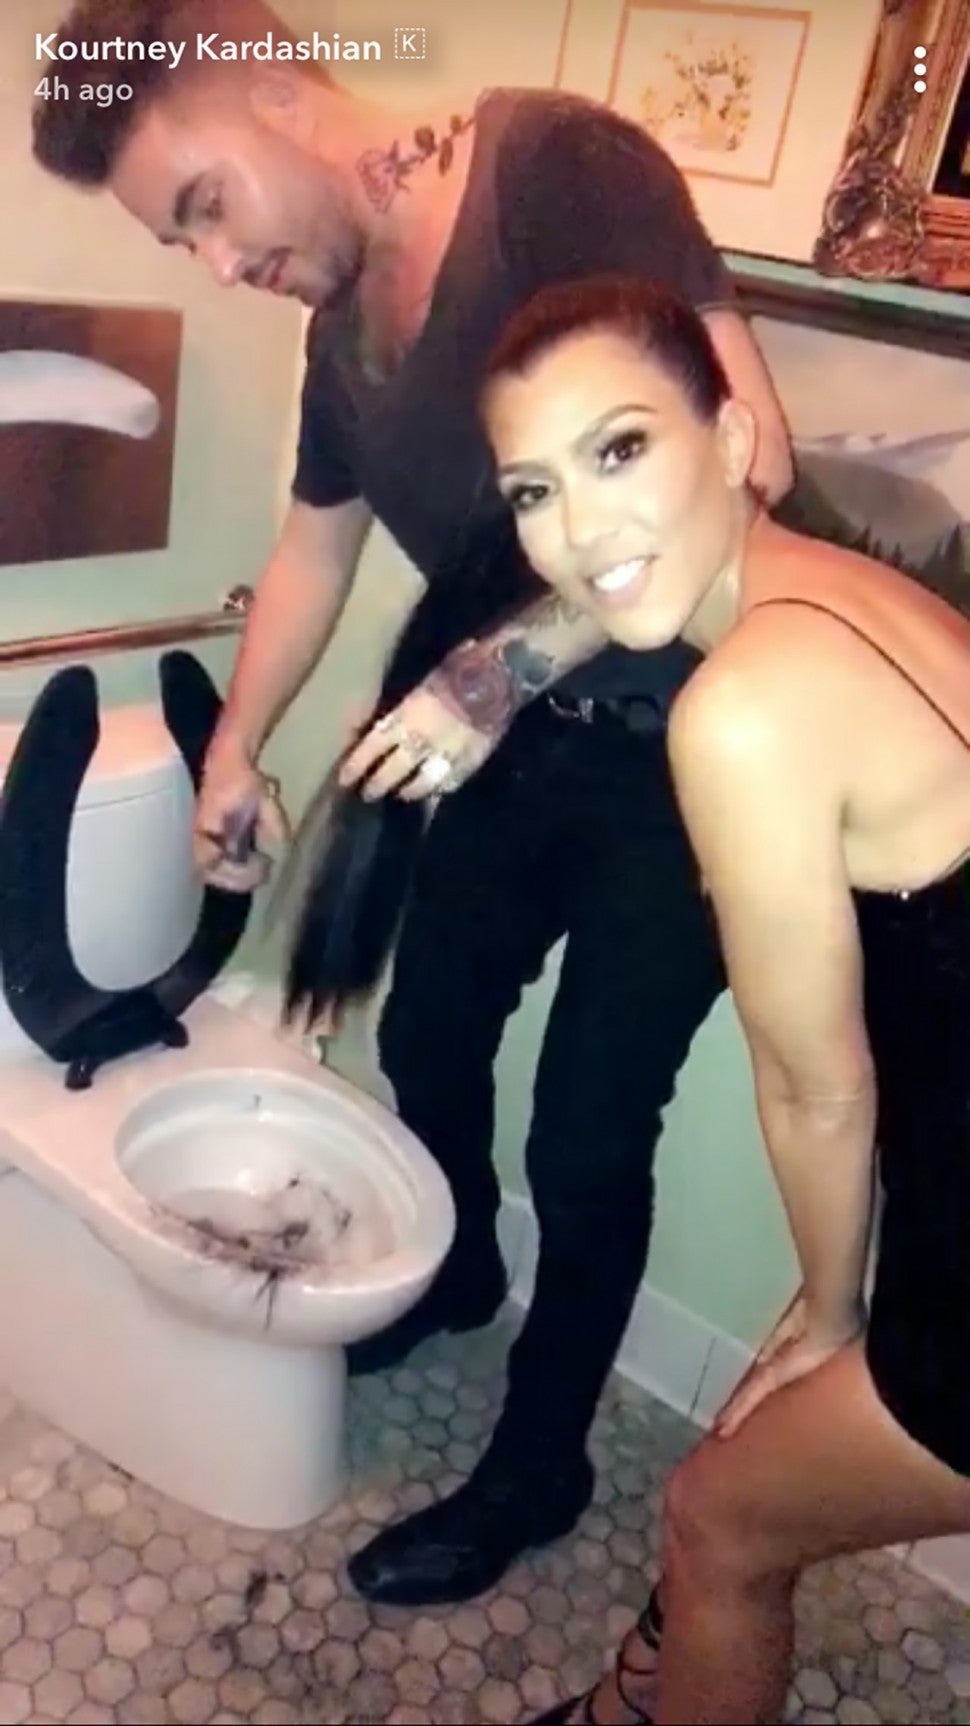 Kourtney Kardashian cuts her hair